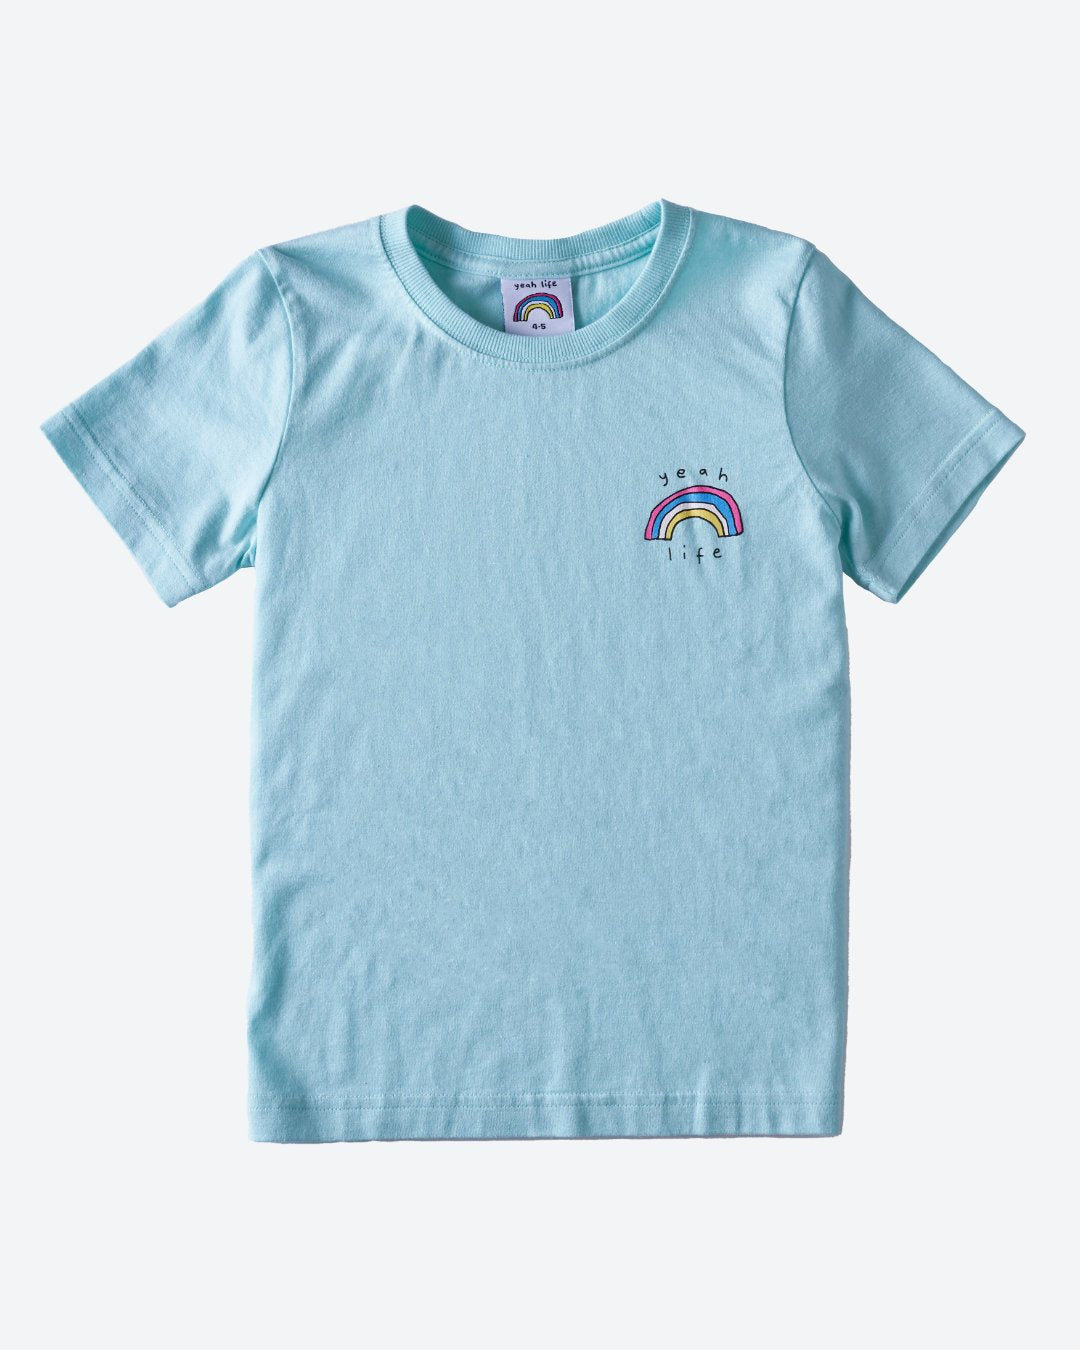 YEAH LIFE Aqua Kids Hemp Organic Cotton T-Shirt